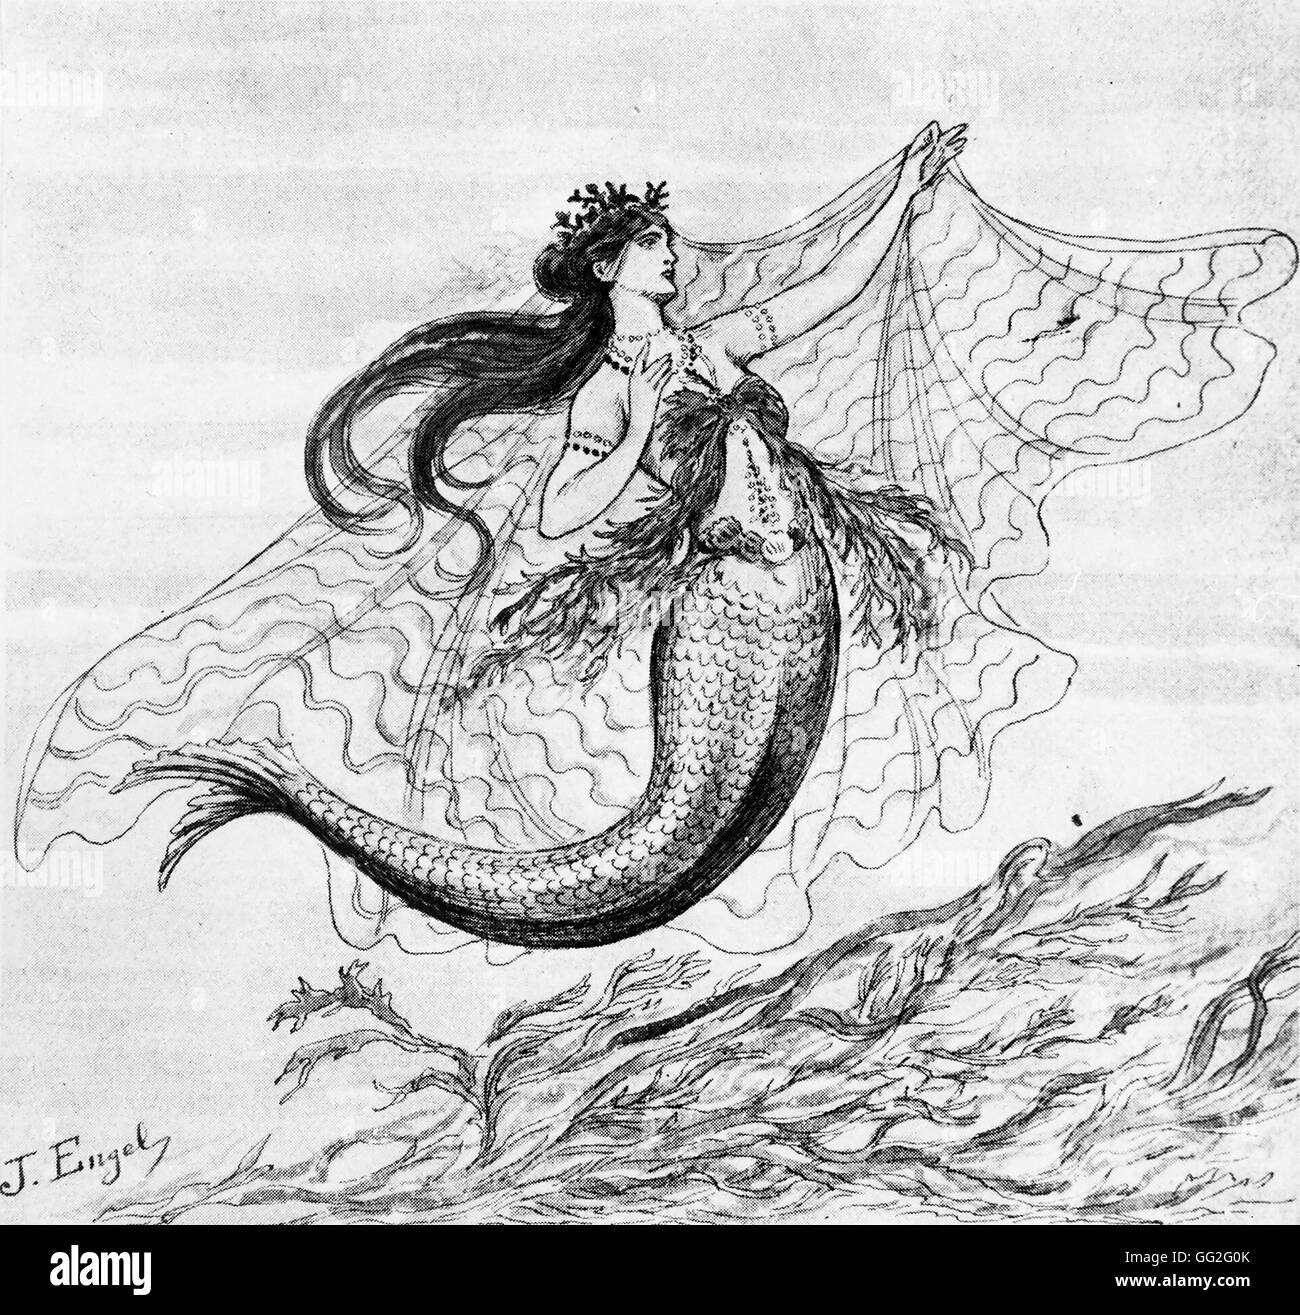 Premium AI Image  Ulysses sirens mermaids modern tale fluid liquid dress  cartoon illustration the singing siren greek mythology tale